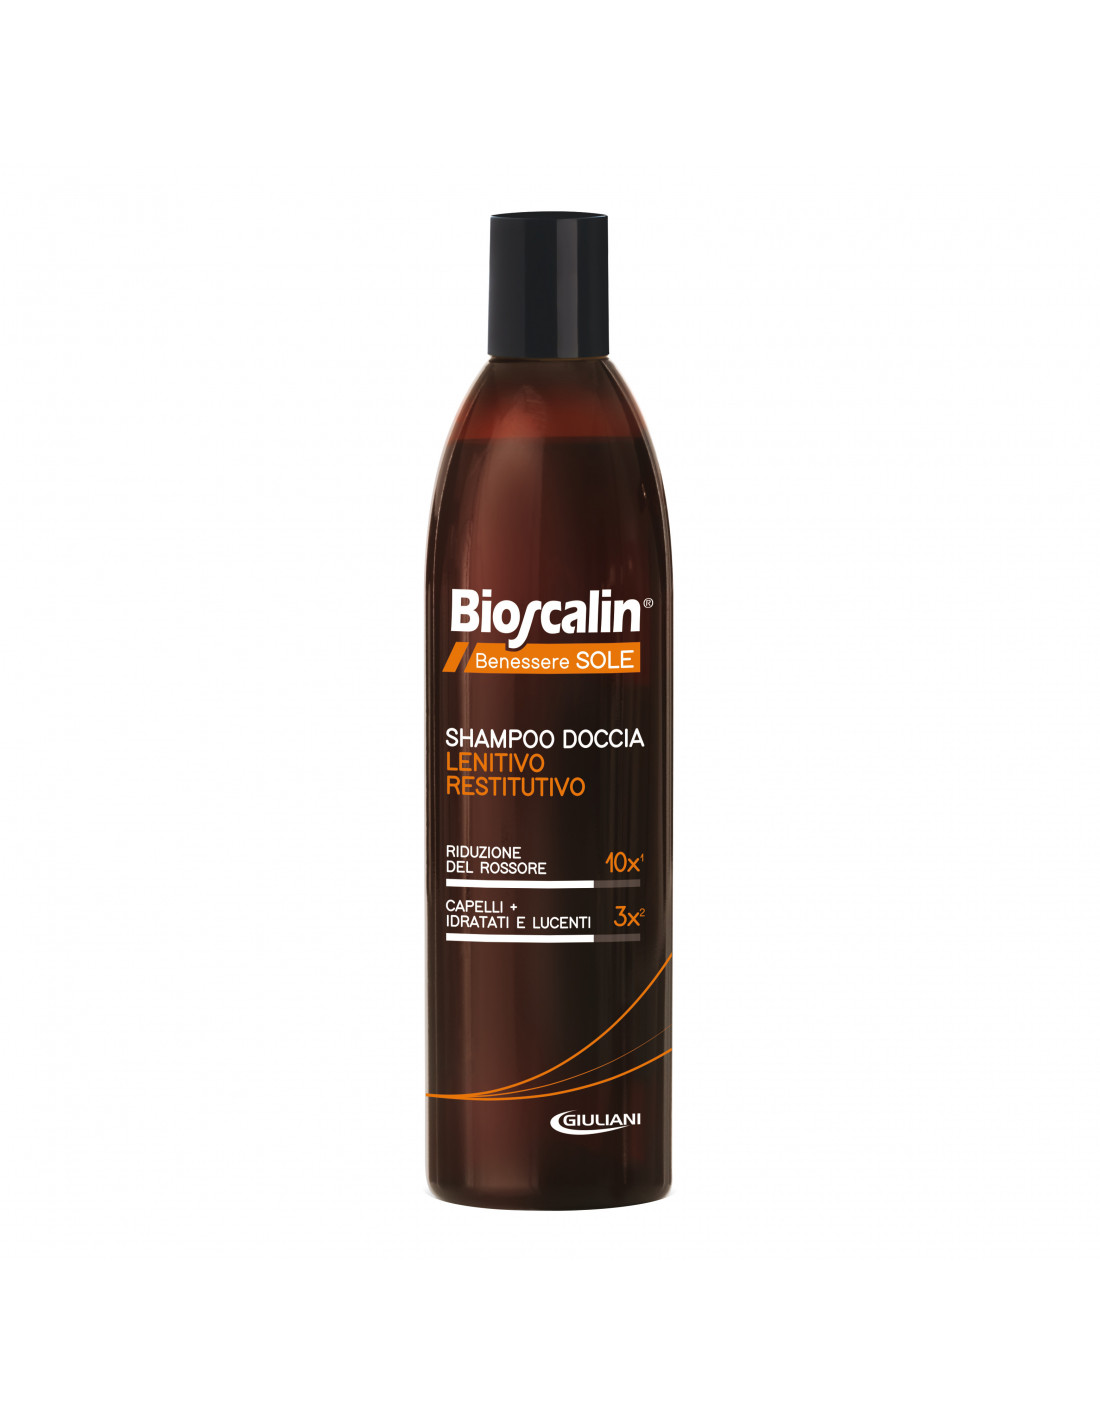 Bioscalin Shampoo-Doccia Delicato Restitutivo 200M